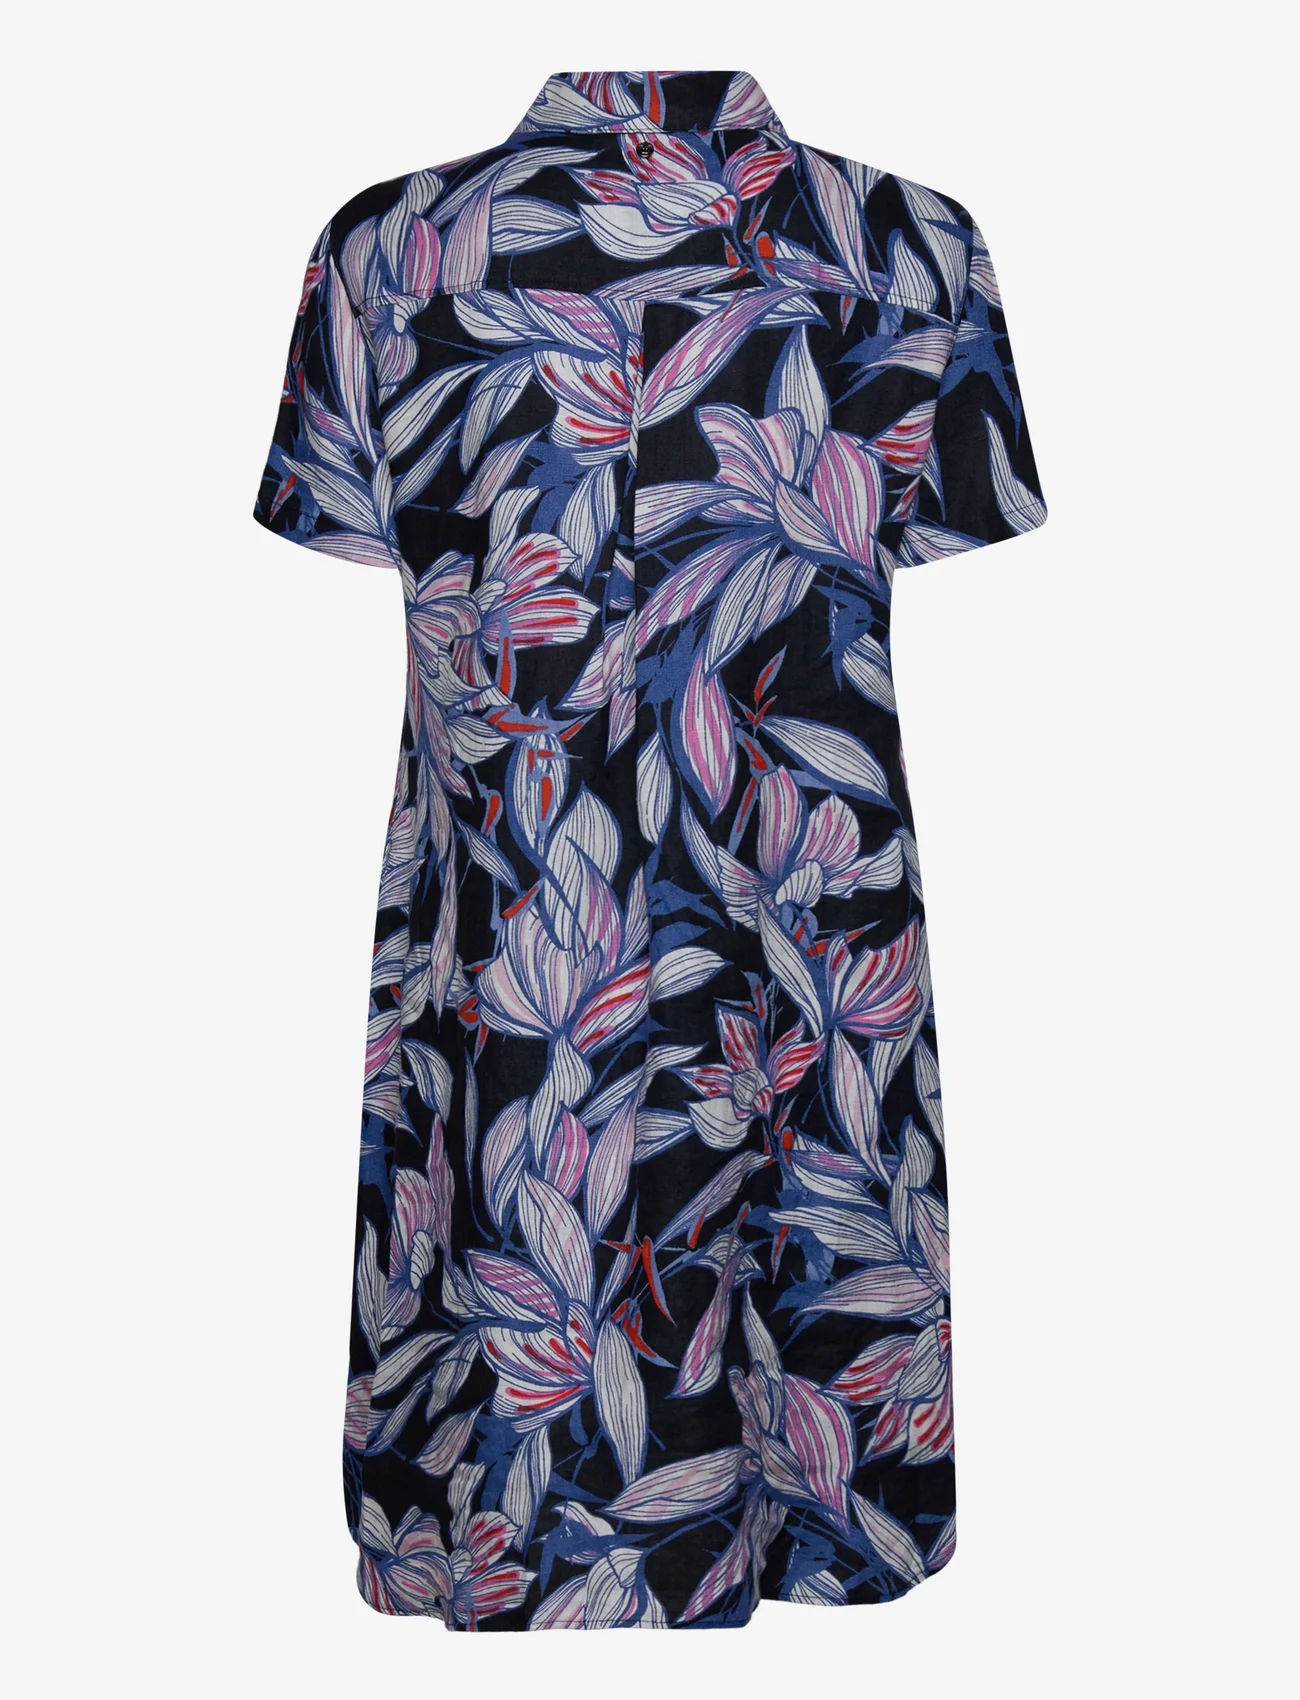 Gerry Weber Edition - DRESS WOVEN - marškinių tipo suknelės - blue/lilac/pink print - 1